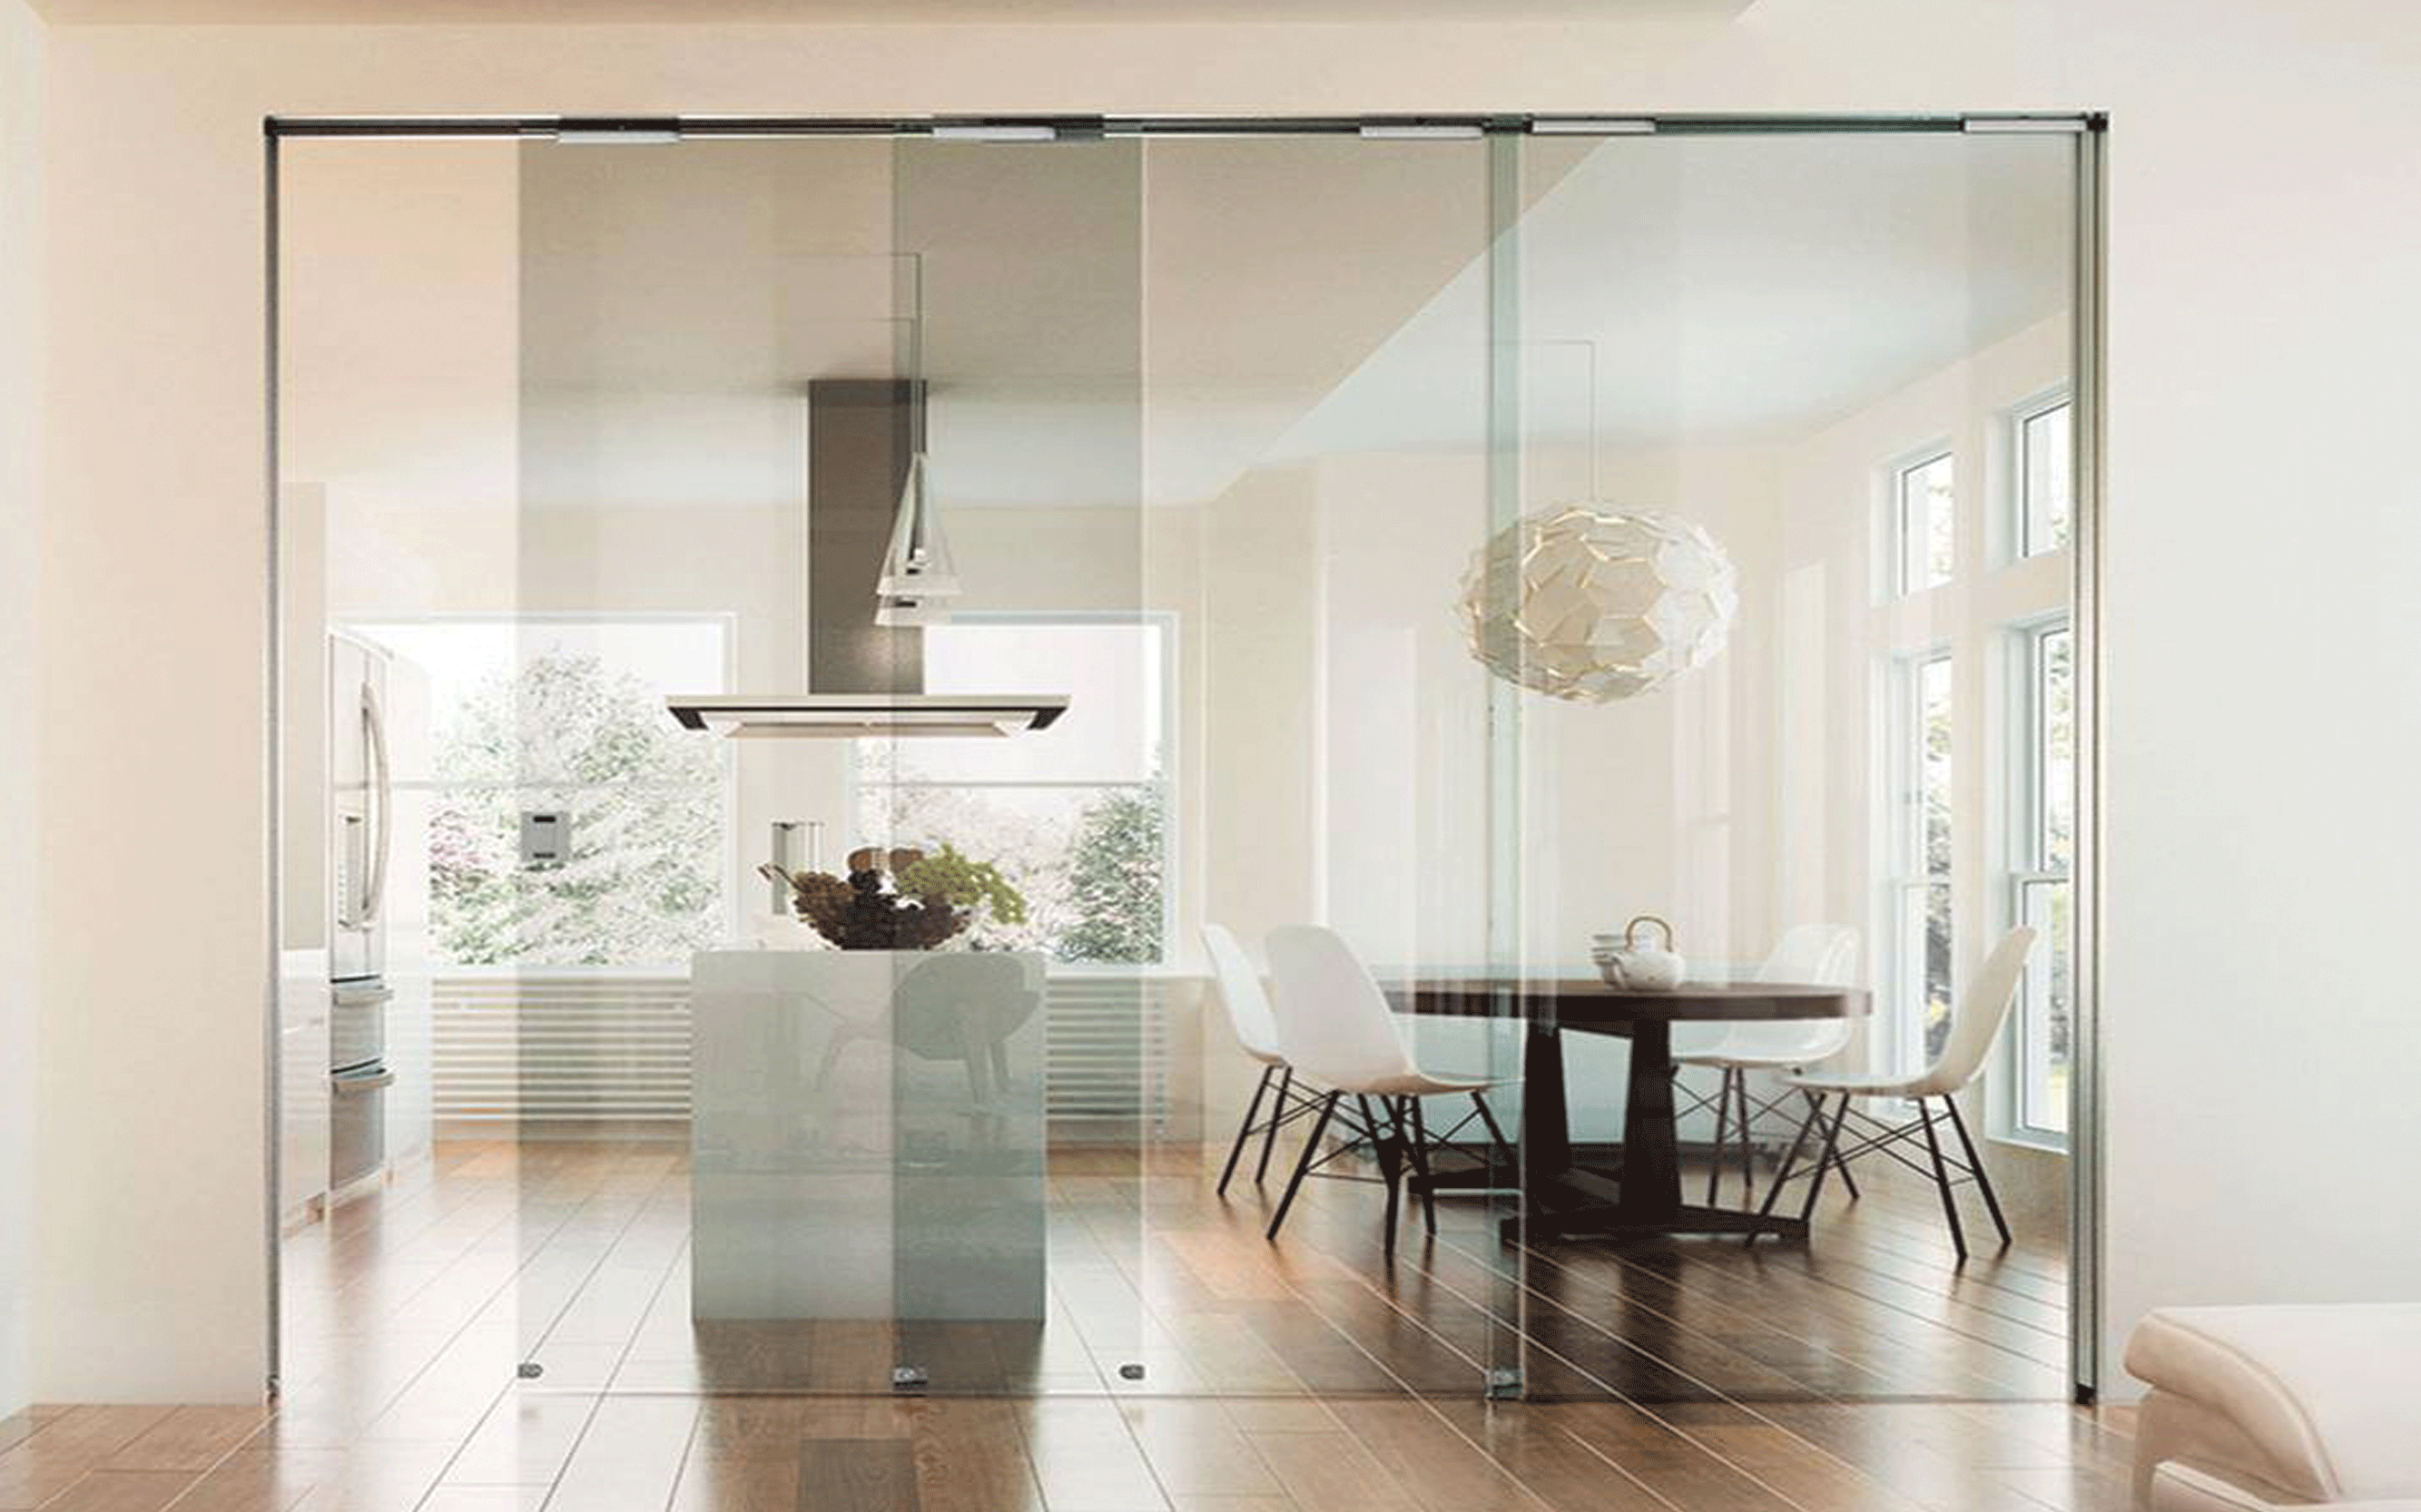 Дверь на кухню со стеклом. Стеклянная перегородка между кухней и гостиной. Кухня гостиная со стеклянной перегородкой. Прозрачные перегородки для зонирования кухни и гостиной.